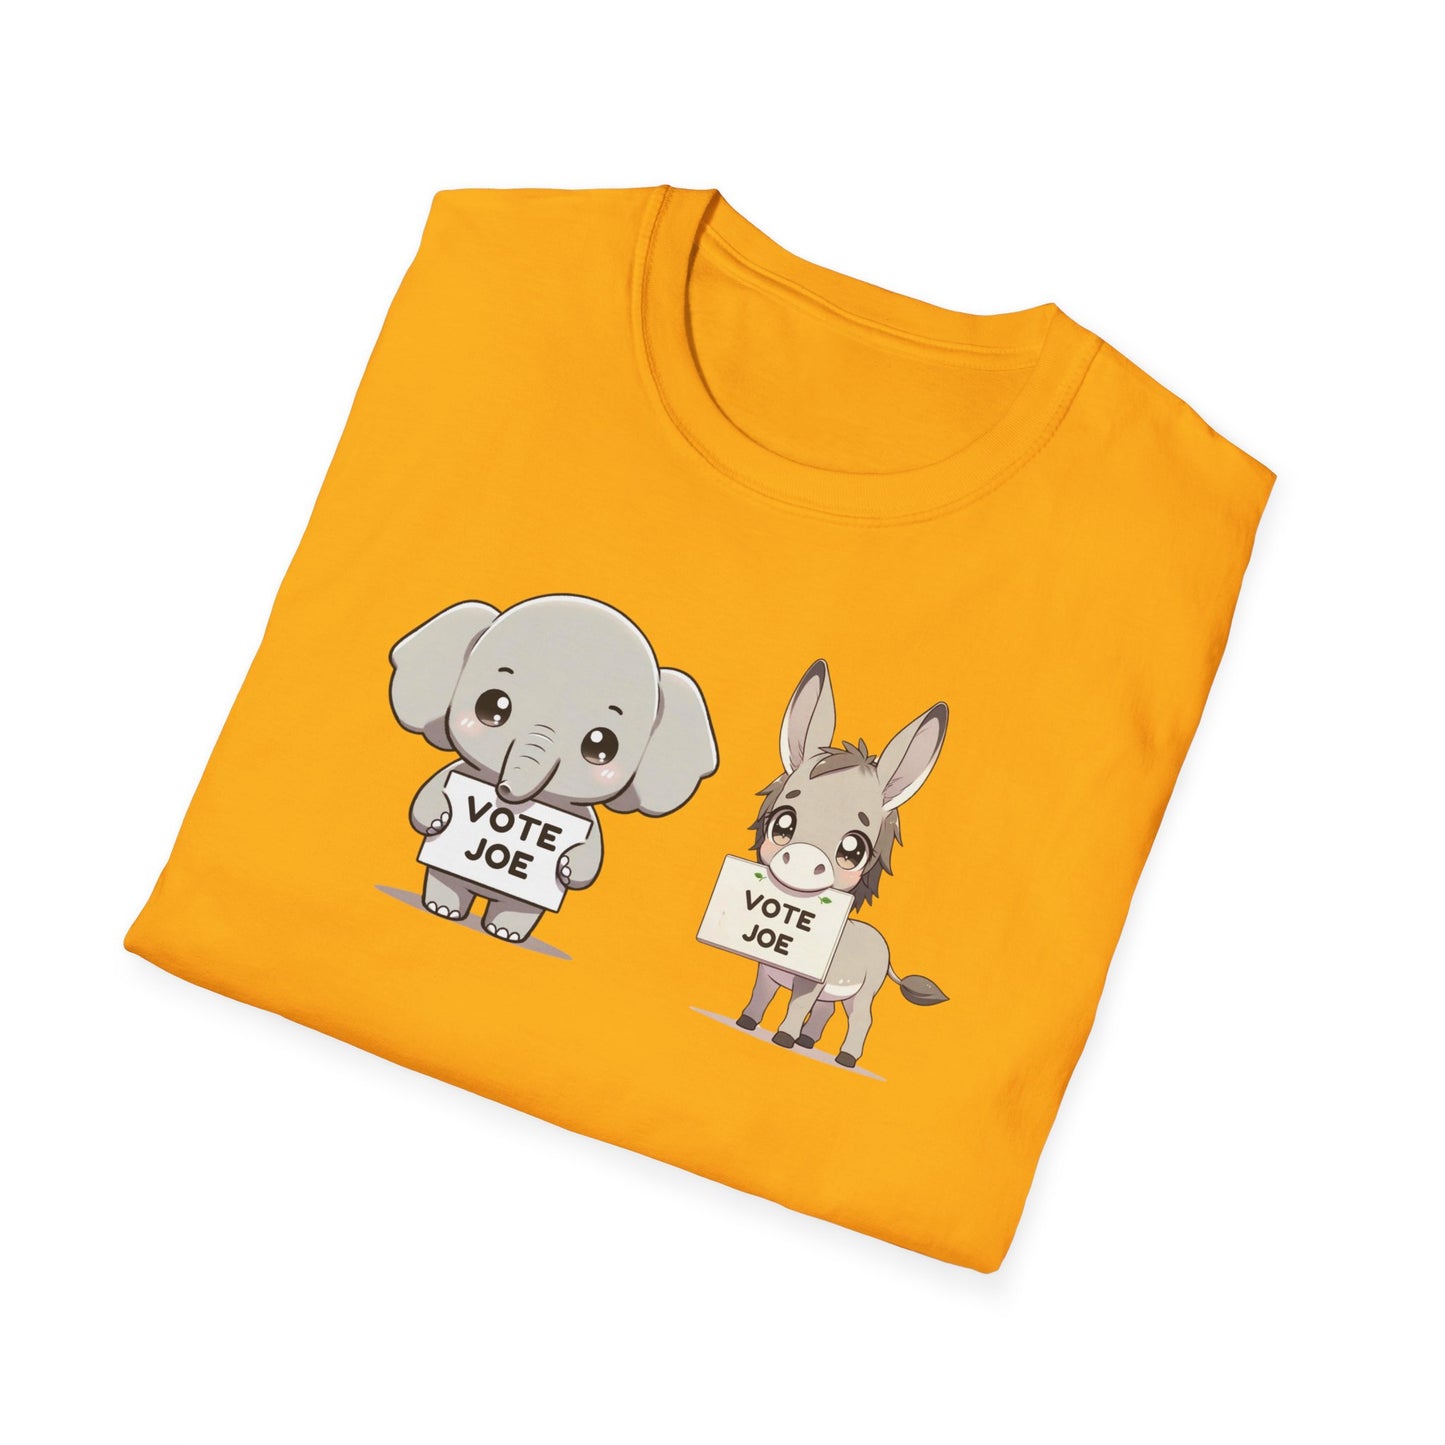 Cute Elephant and Donkey Agree! Vote Joe! Inspiring Statement Soft Style t-shirt |unisex| Minimalist Activism! Show You Care!